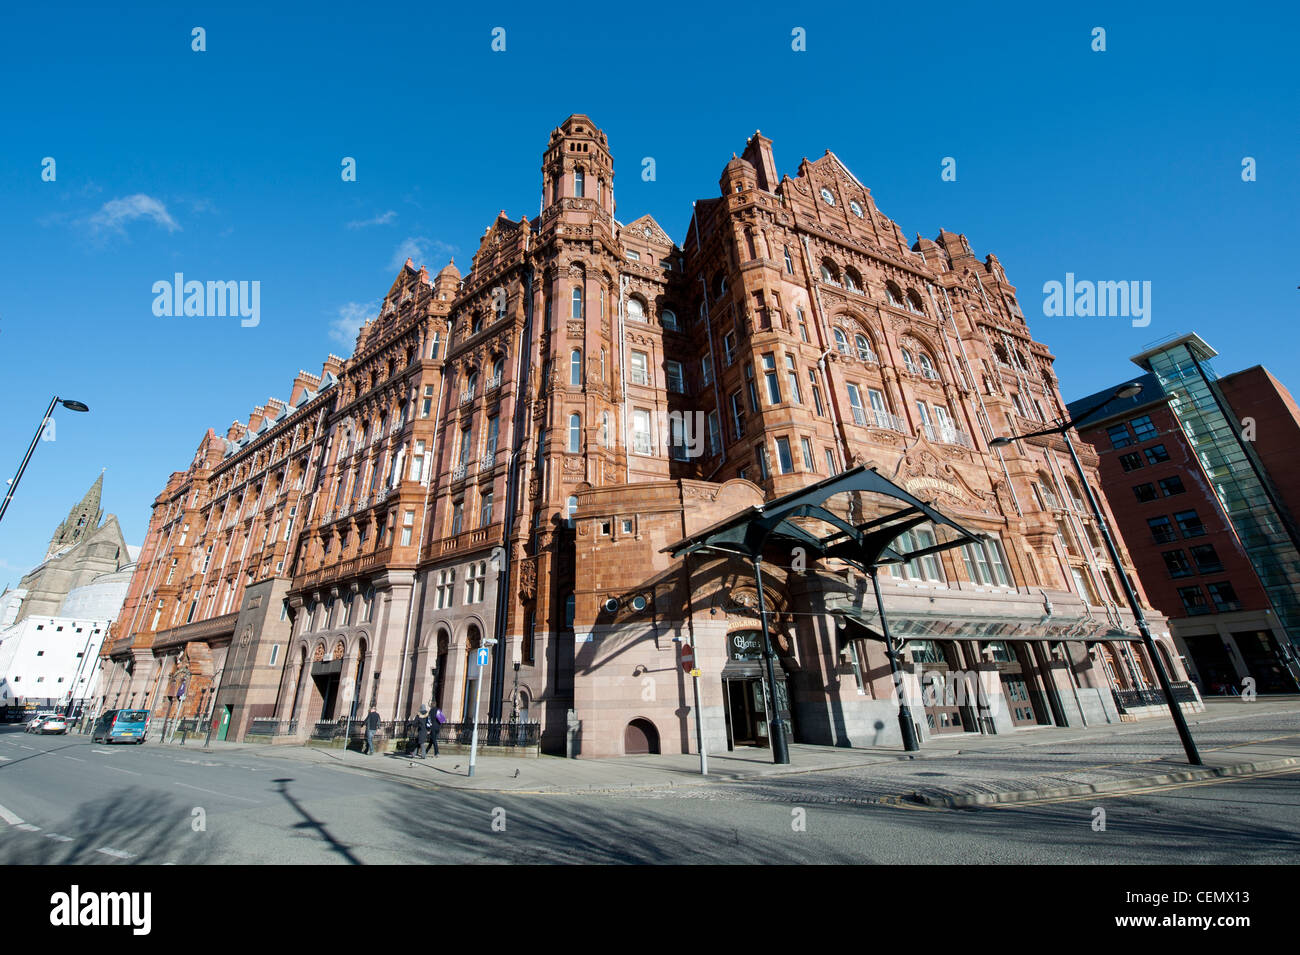 Le Midland Hotel dans le centre-ville de Manchester sur un ciel bleu clair jour. Banque D'Images